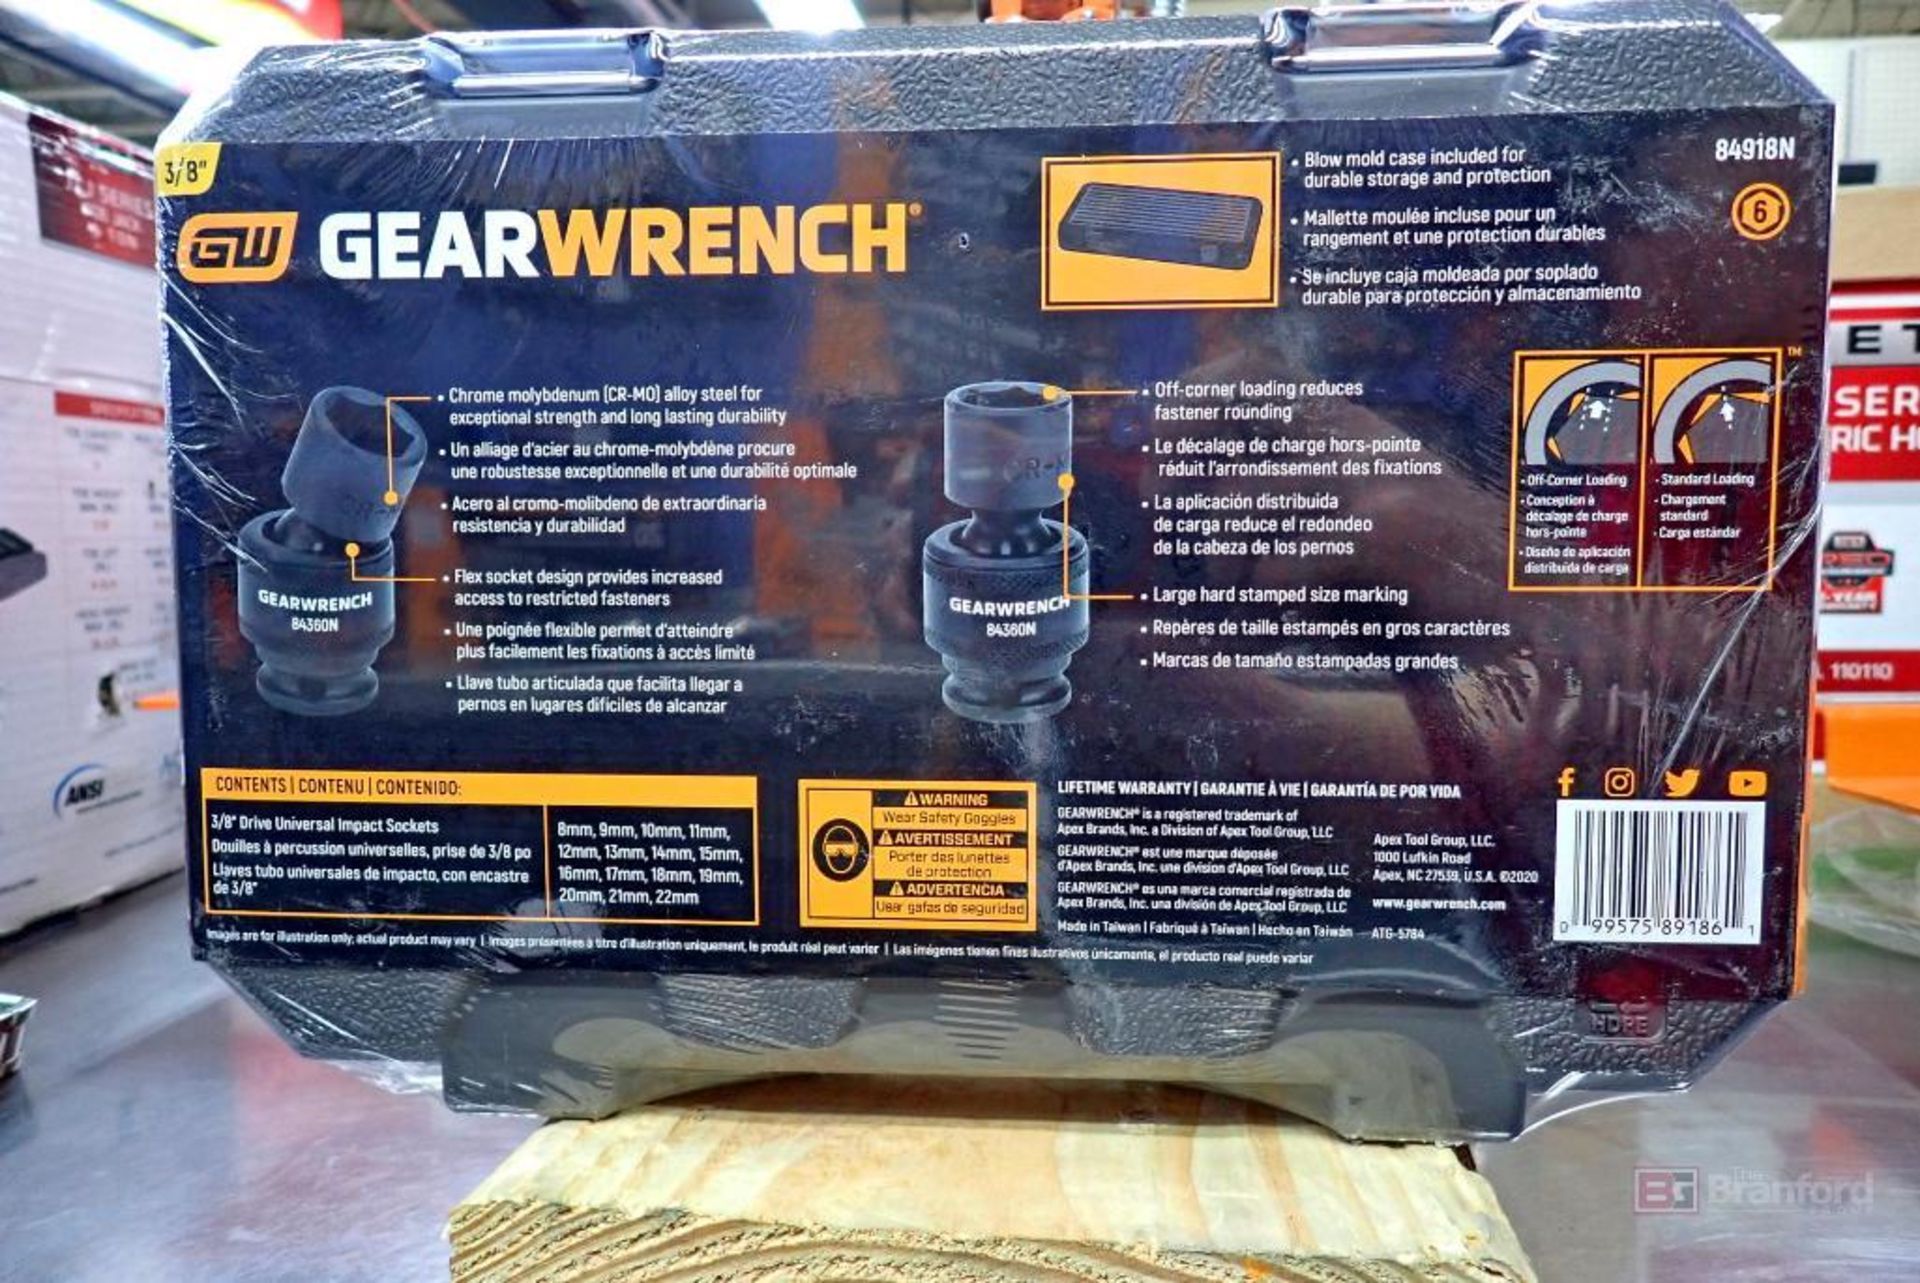 GearWrench 84918N 15 Pc. Metric Universal Impact Socket Set - Image 2 of 4